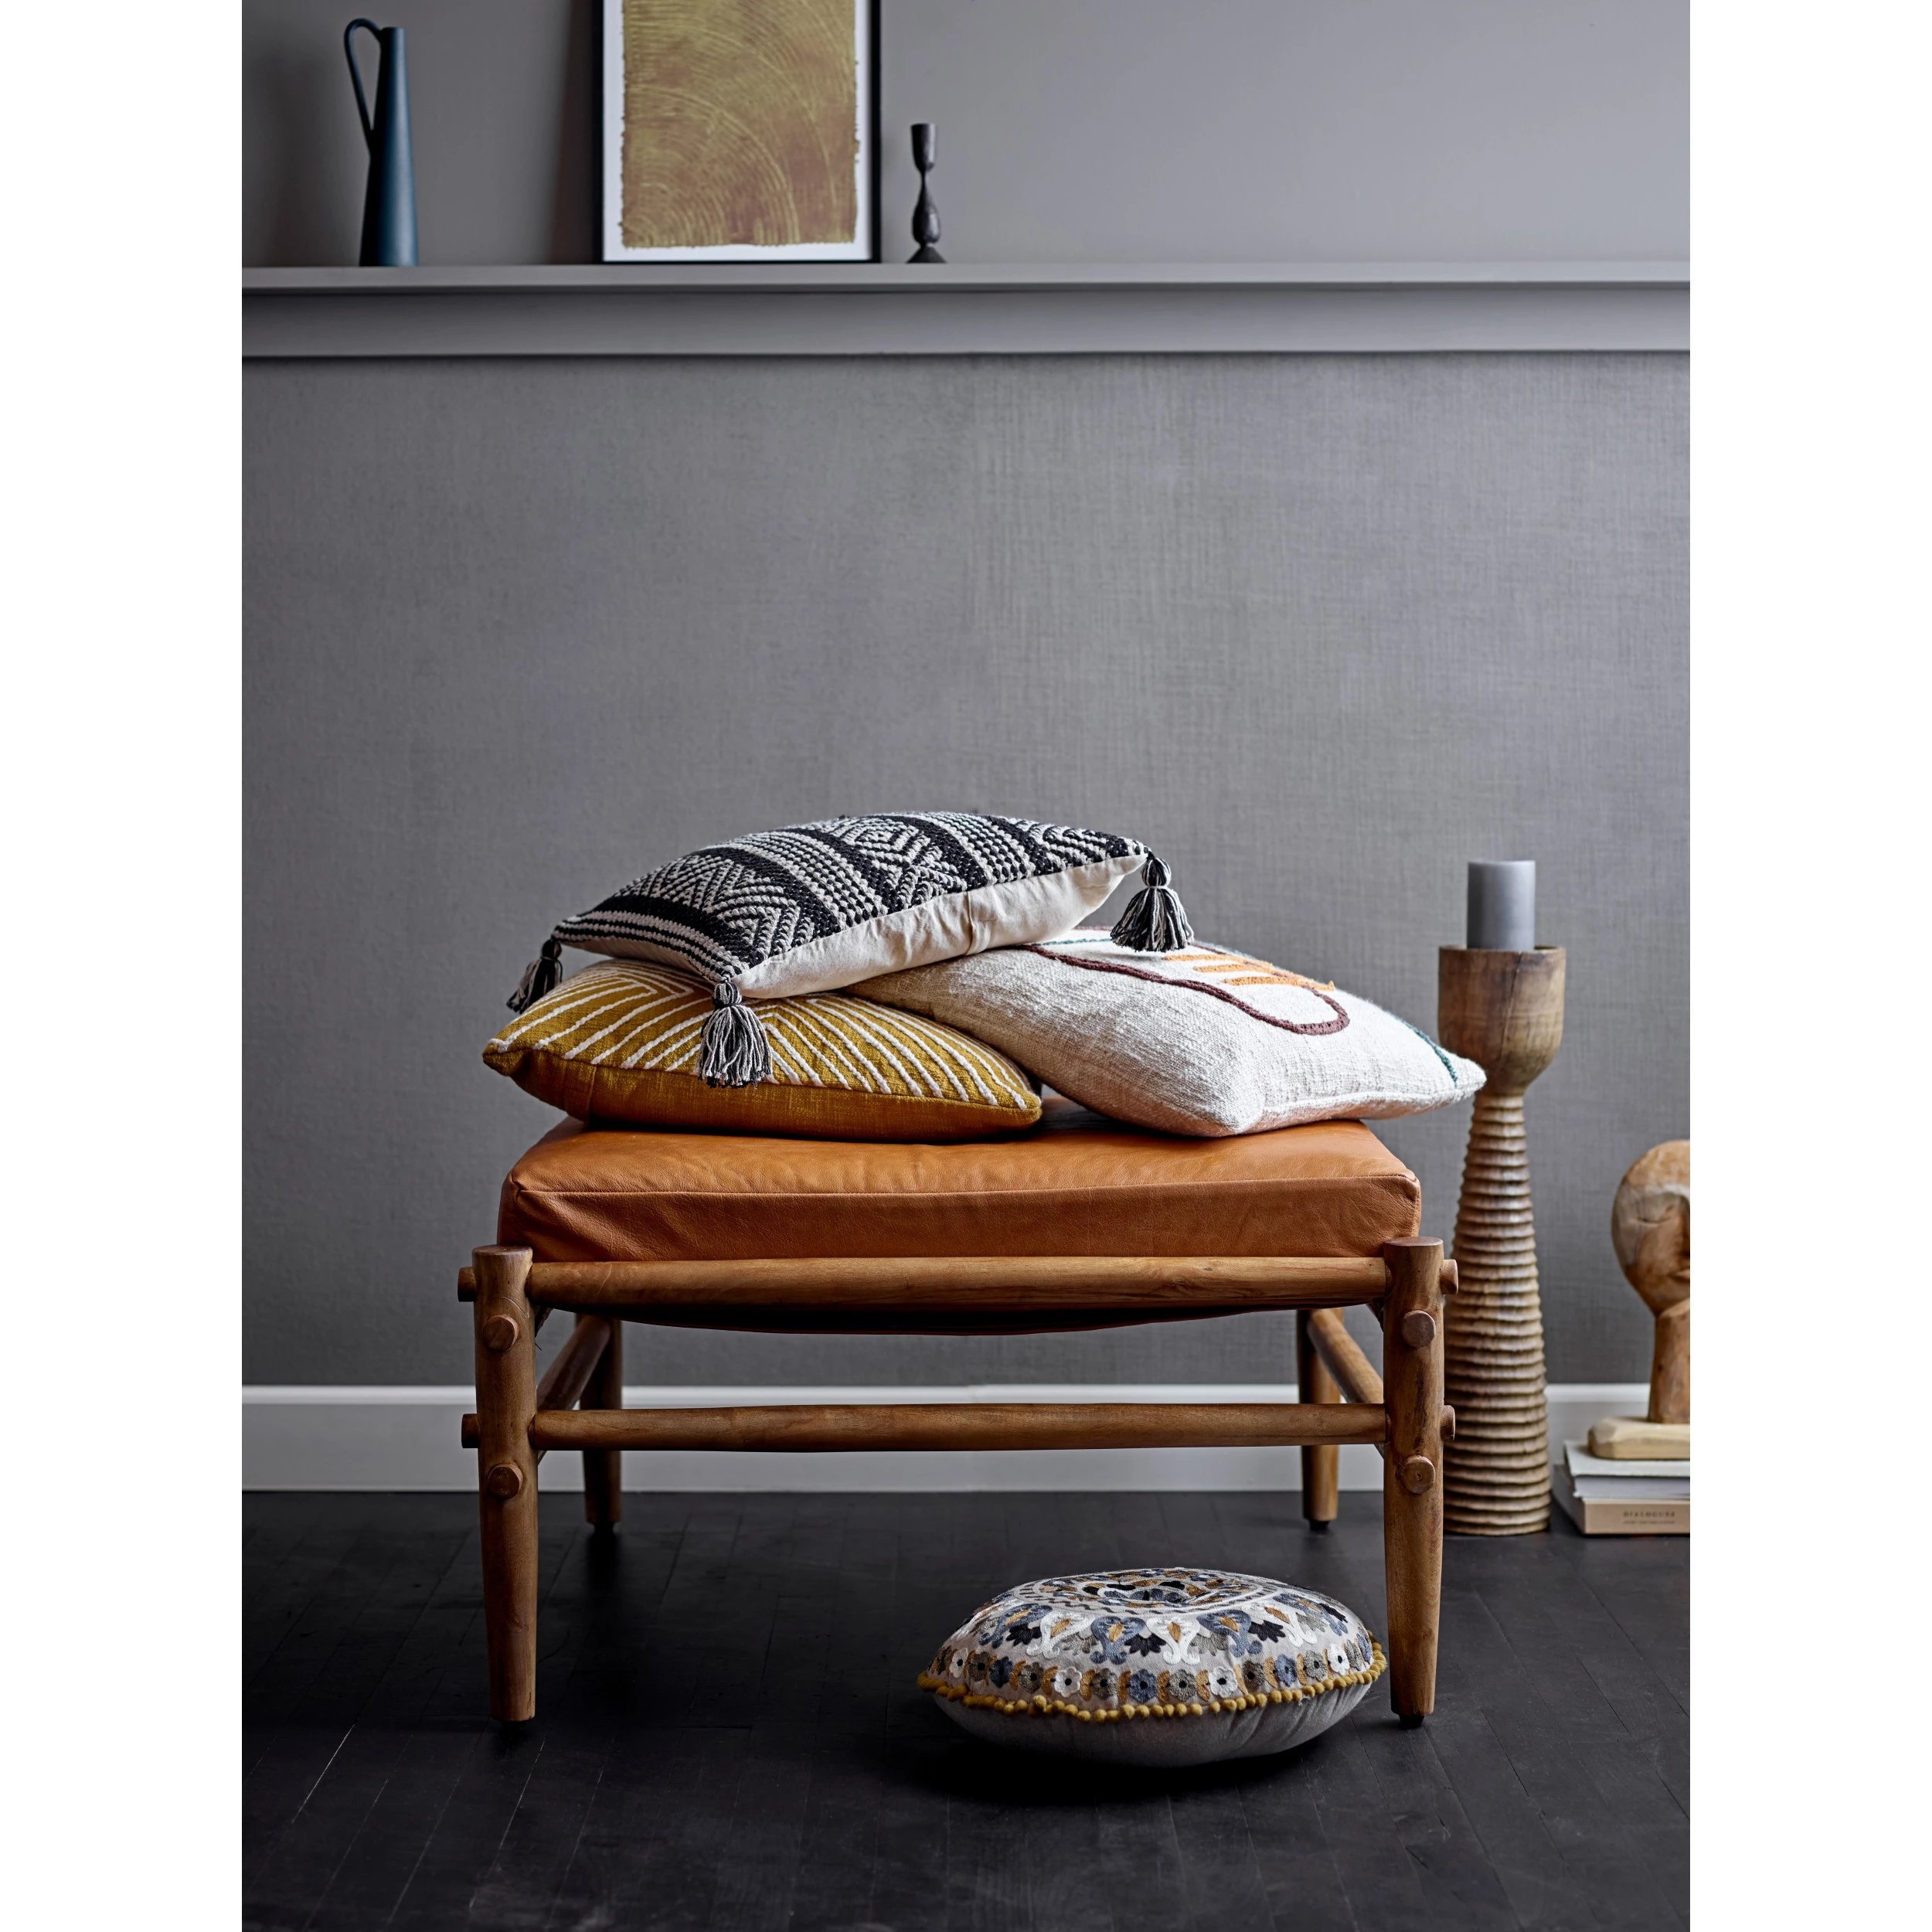 Mango Wood Ottoman with Leather Cushion - Image 5